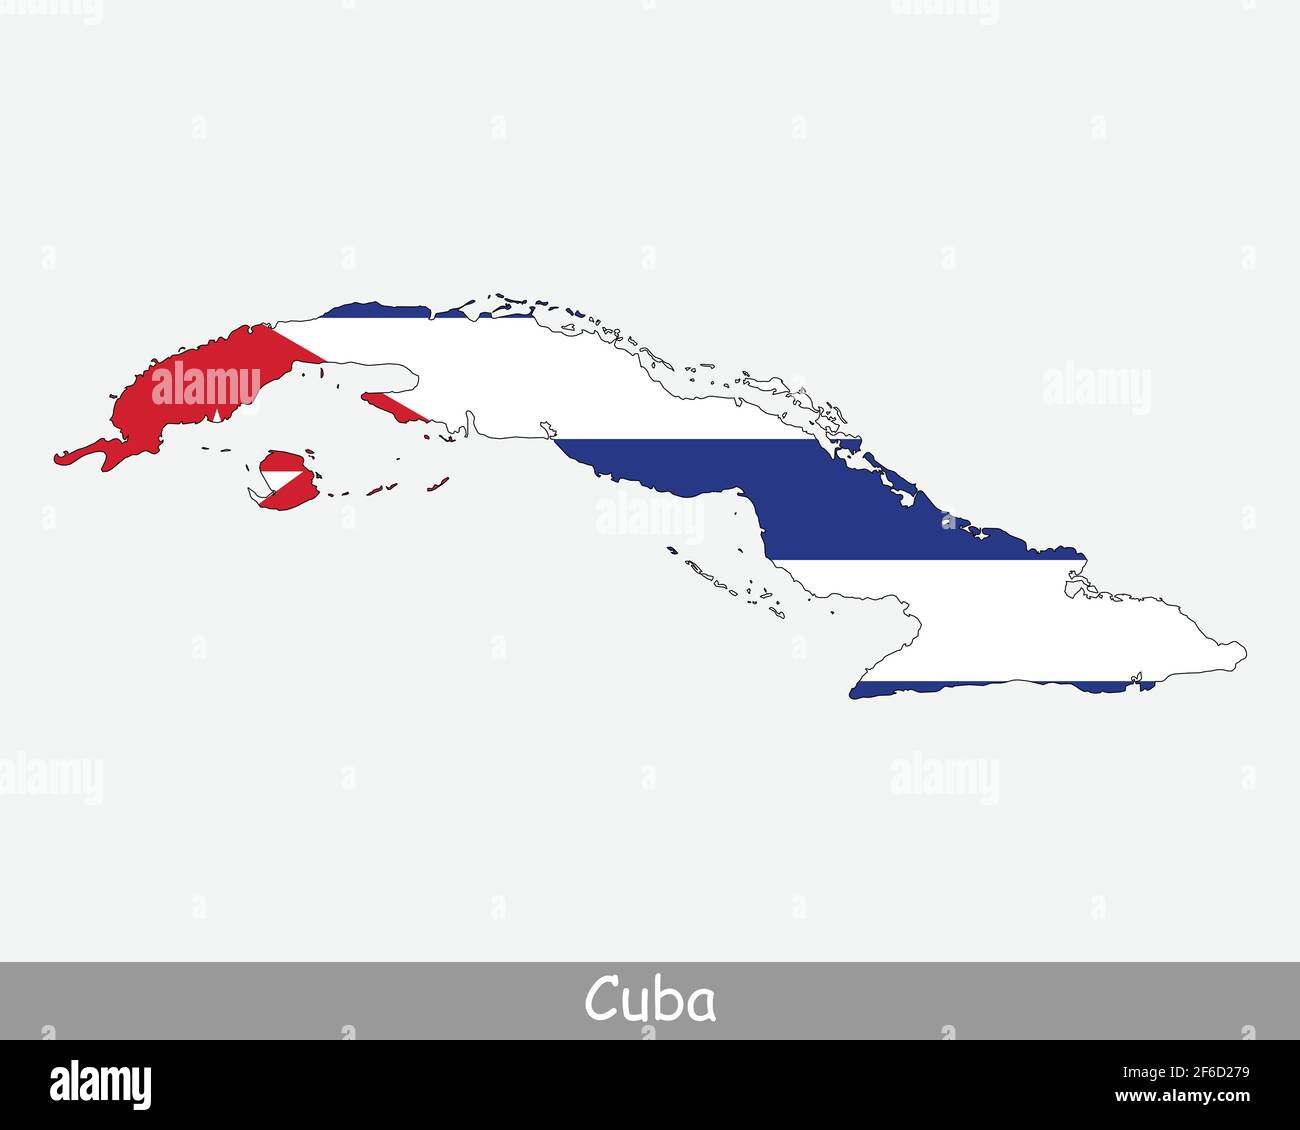 Bandiera della carta di Cuba. Mappa di Cuba con la bandiera nazionale cubana isolata su sfondo bianco. Illustrazione vettoriale. Illustrazione Vettoriale